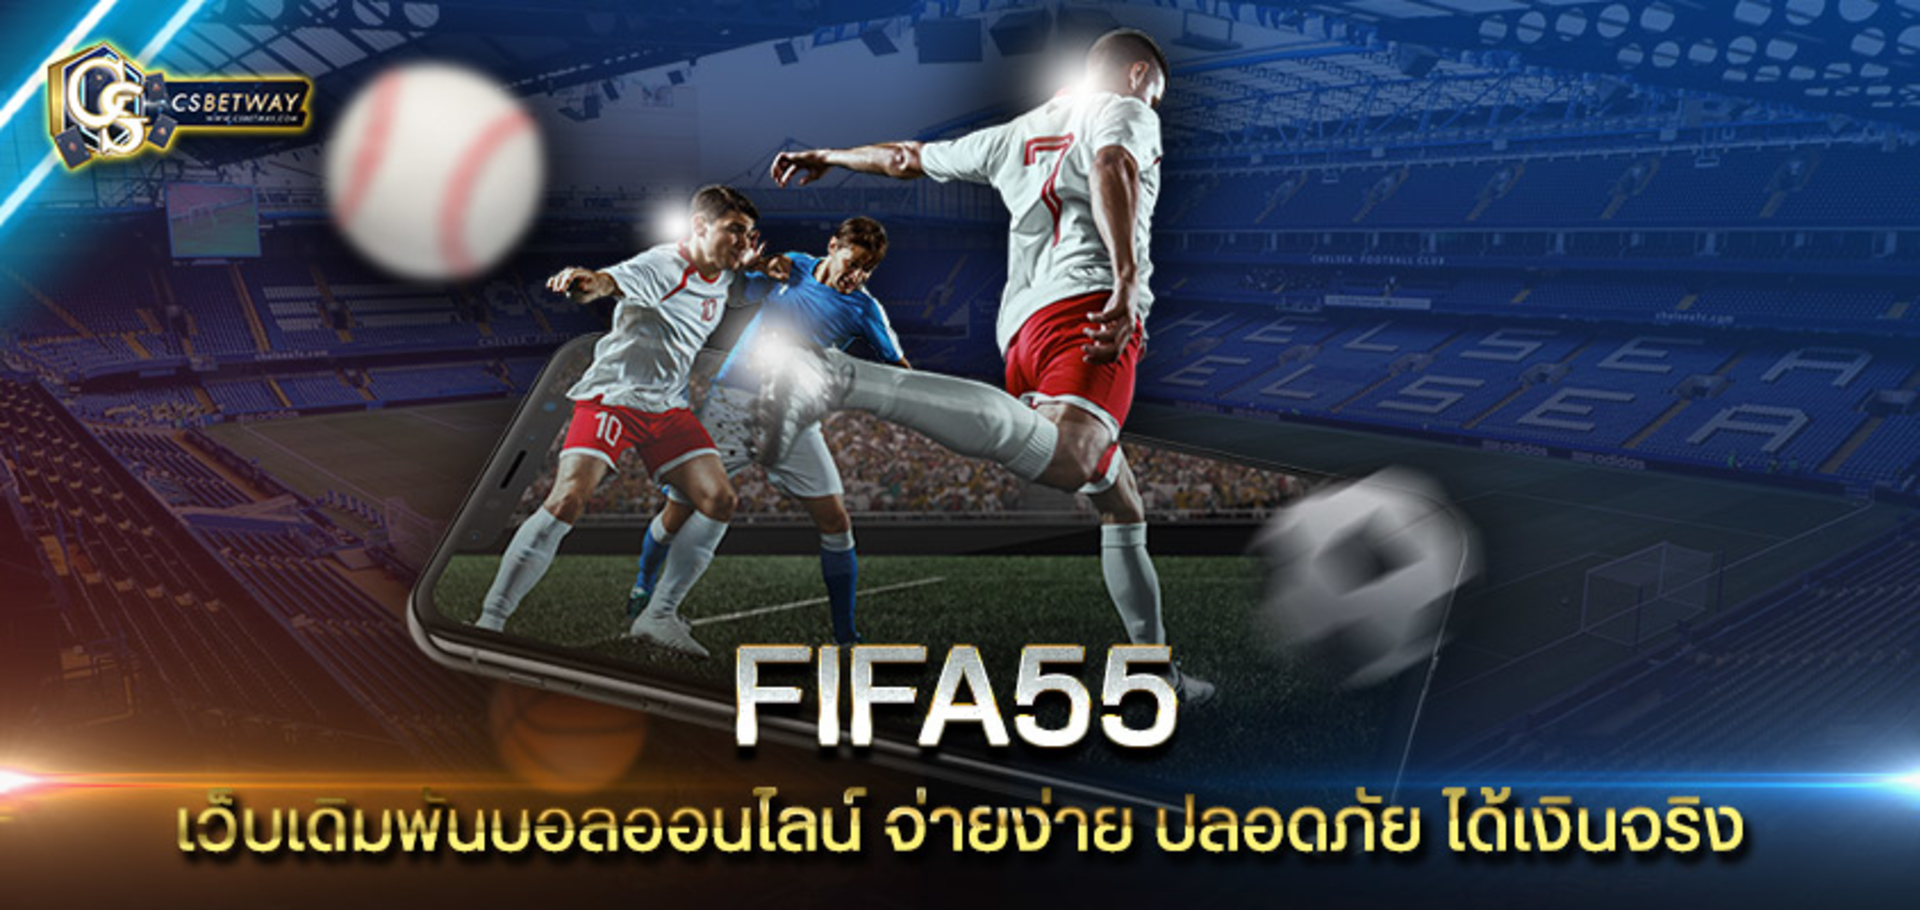 Fifa55 เว็บเดิมพันบอลออนไลน์ Fifa55 จ่ายง่าย ปลอดภัย ได้เงินจริง